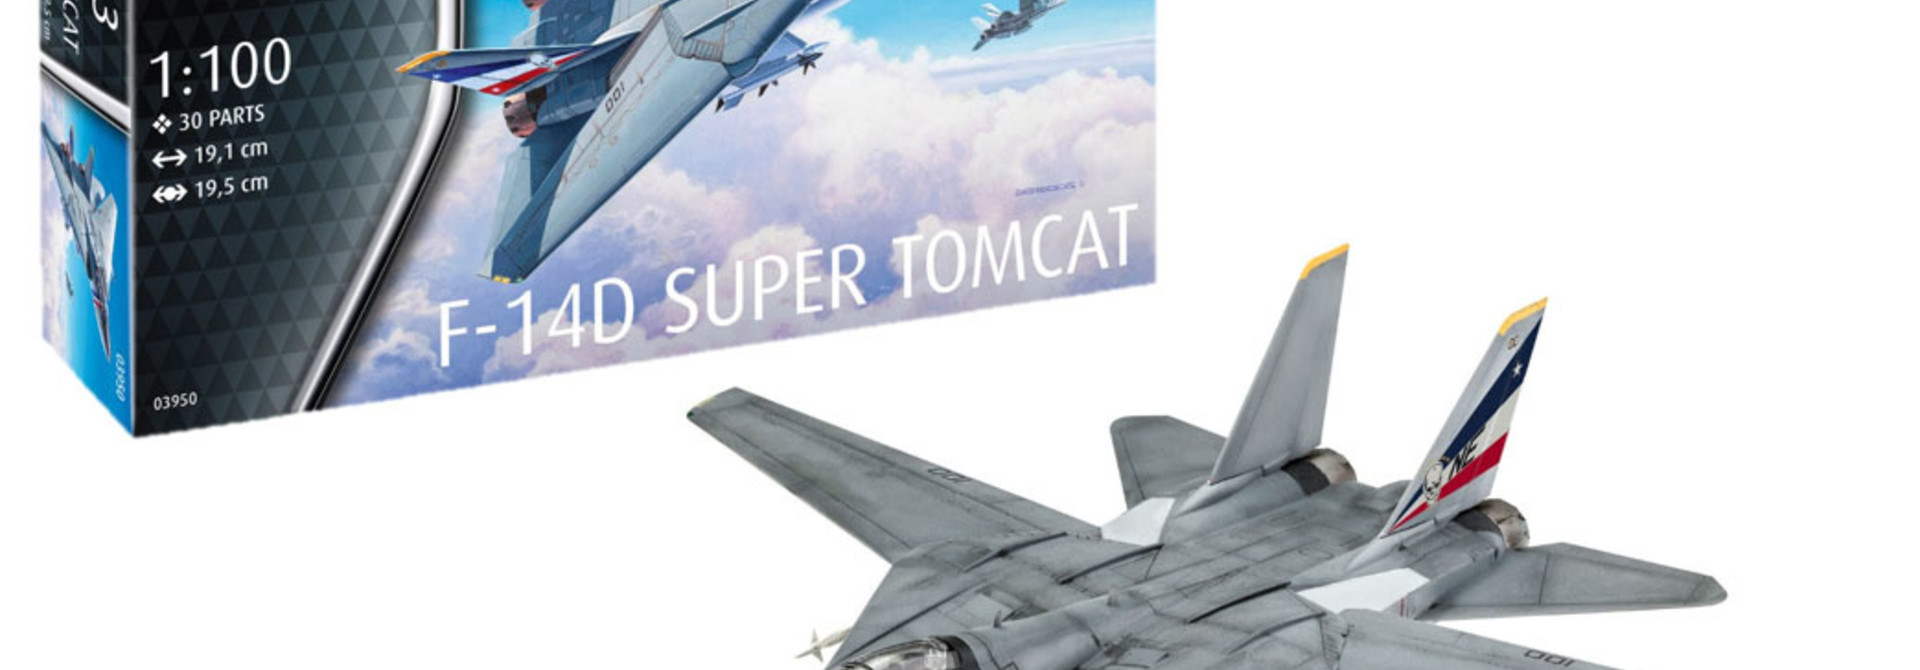 1:100 F-14D Super Tomcat